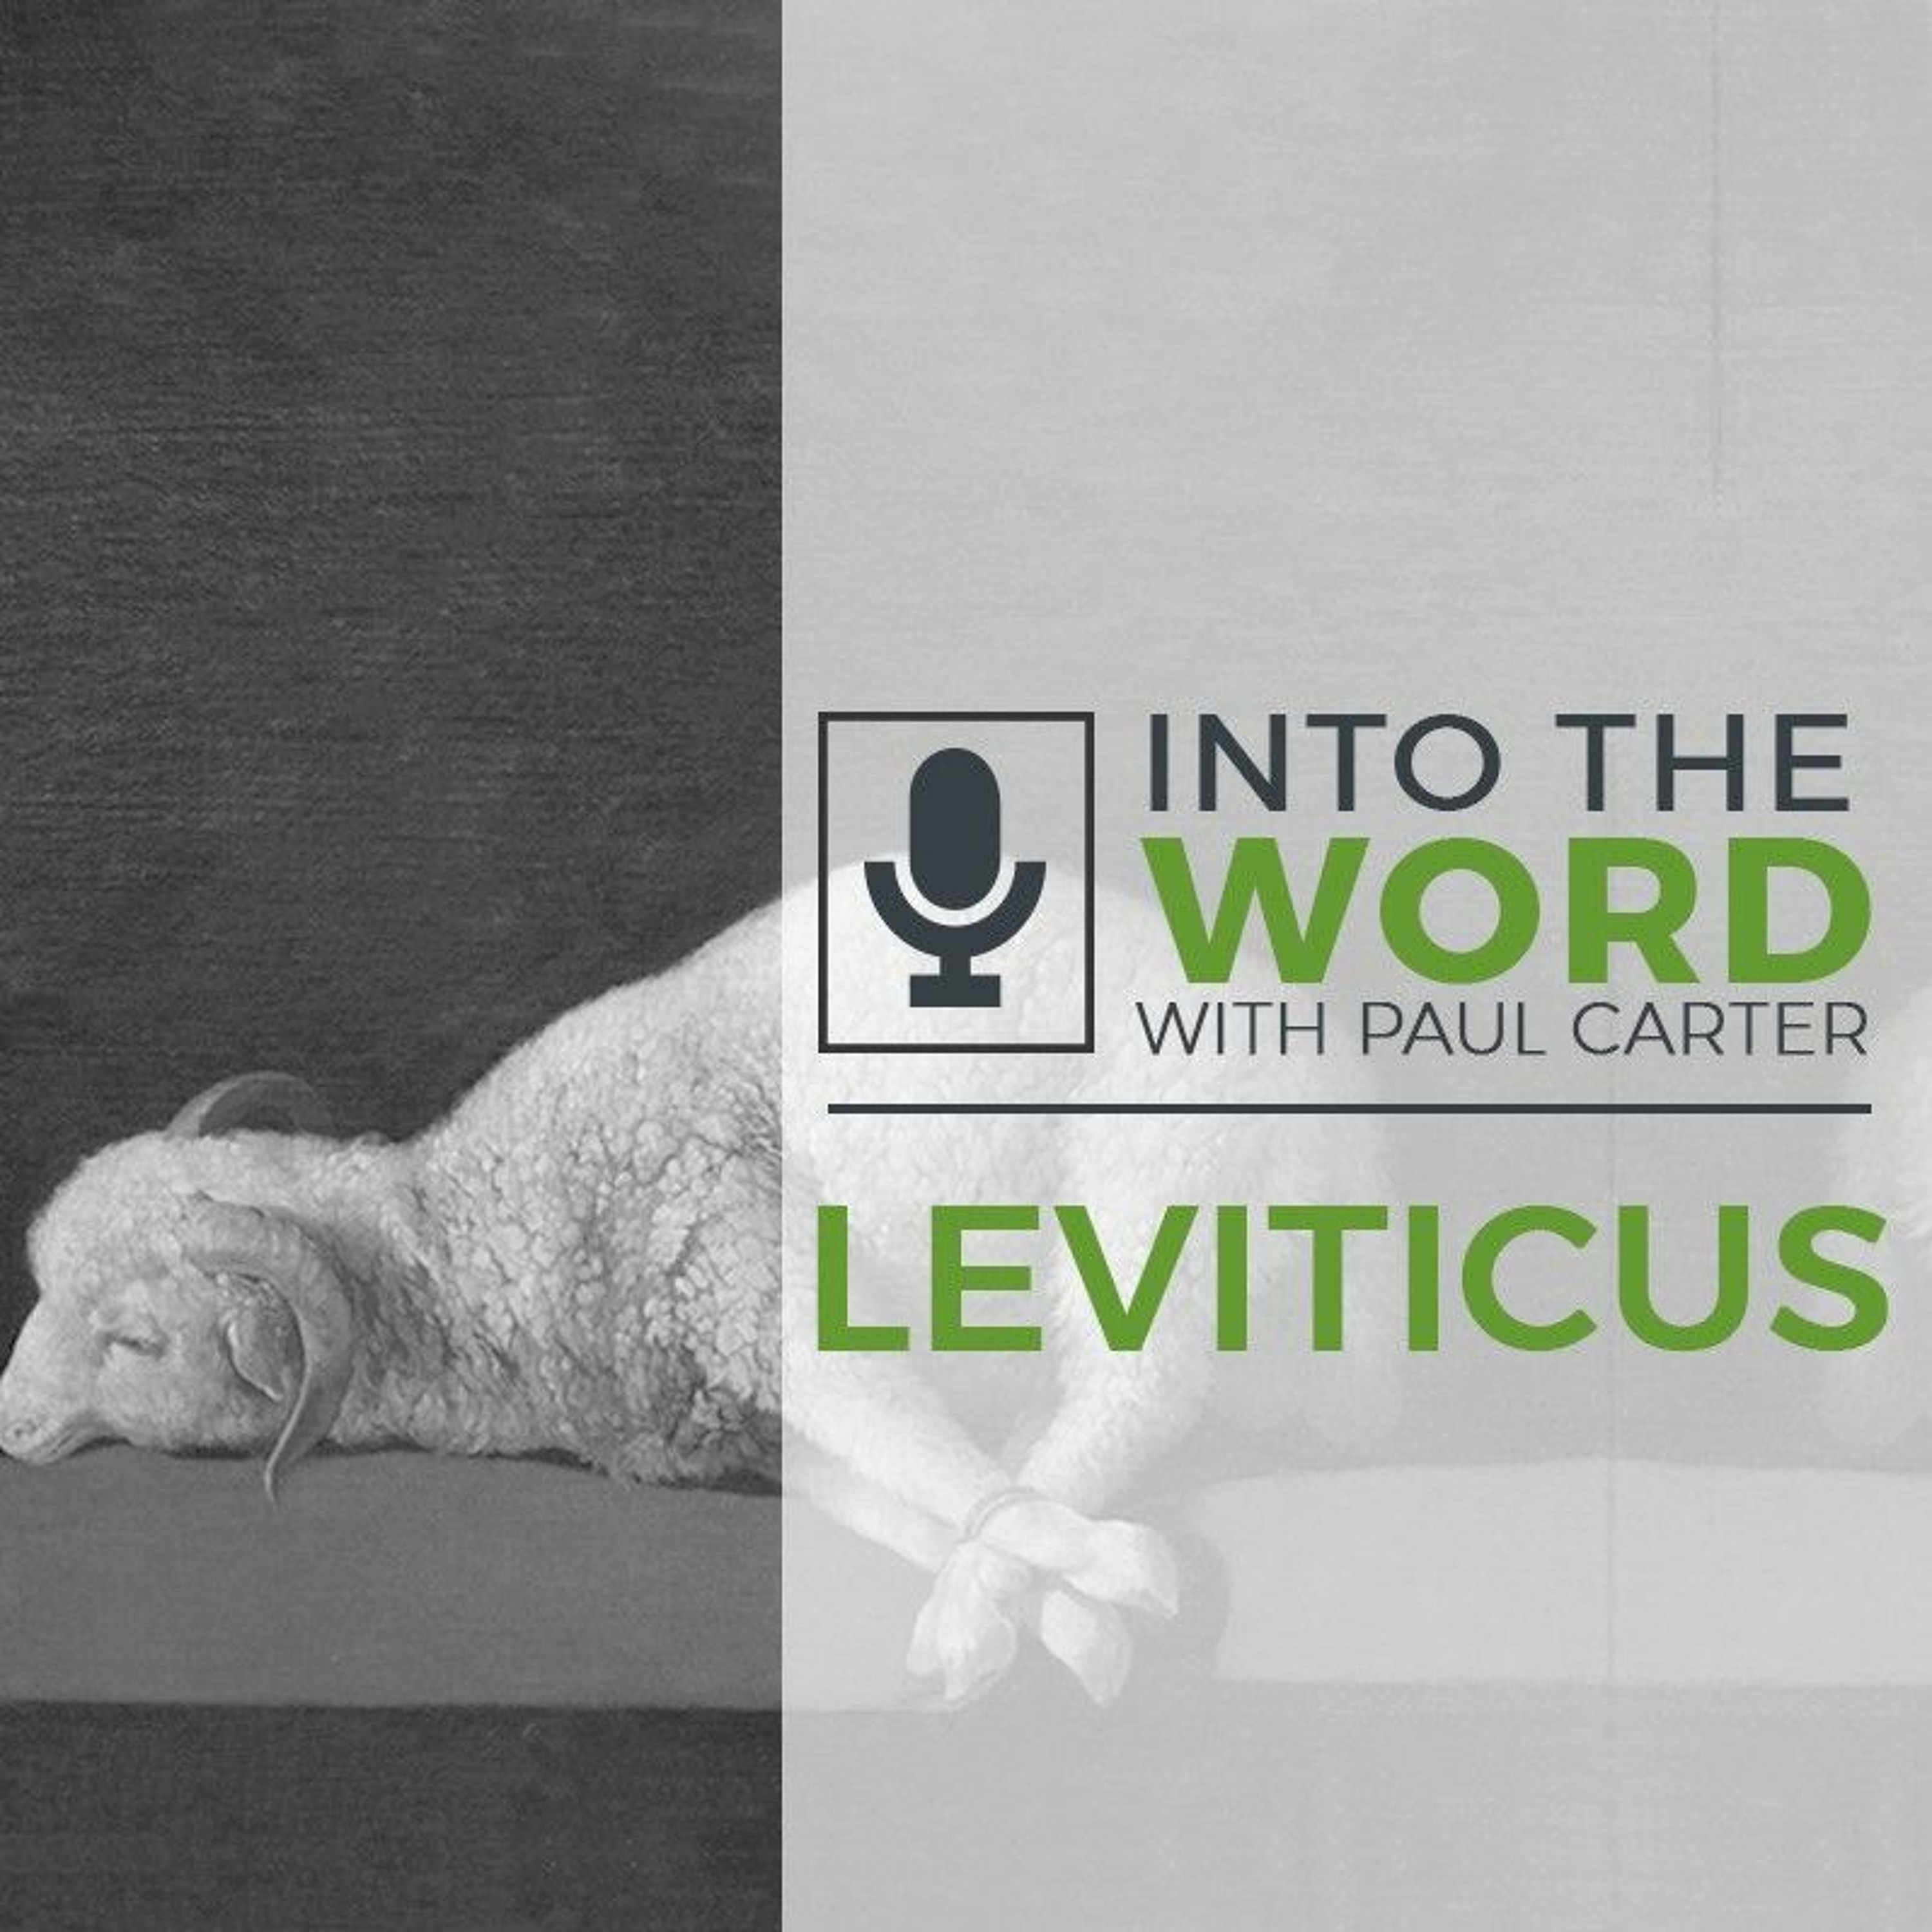 Leviticus 3